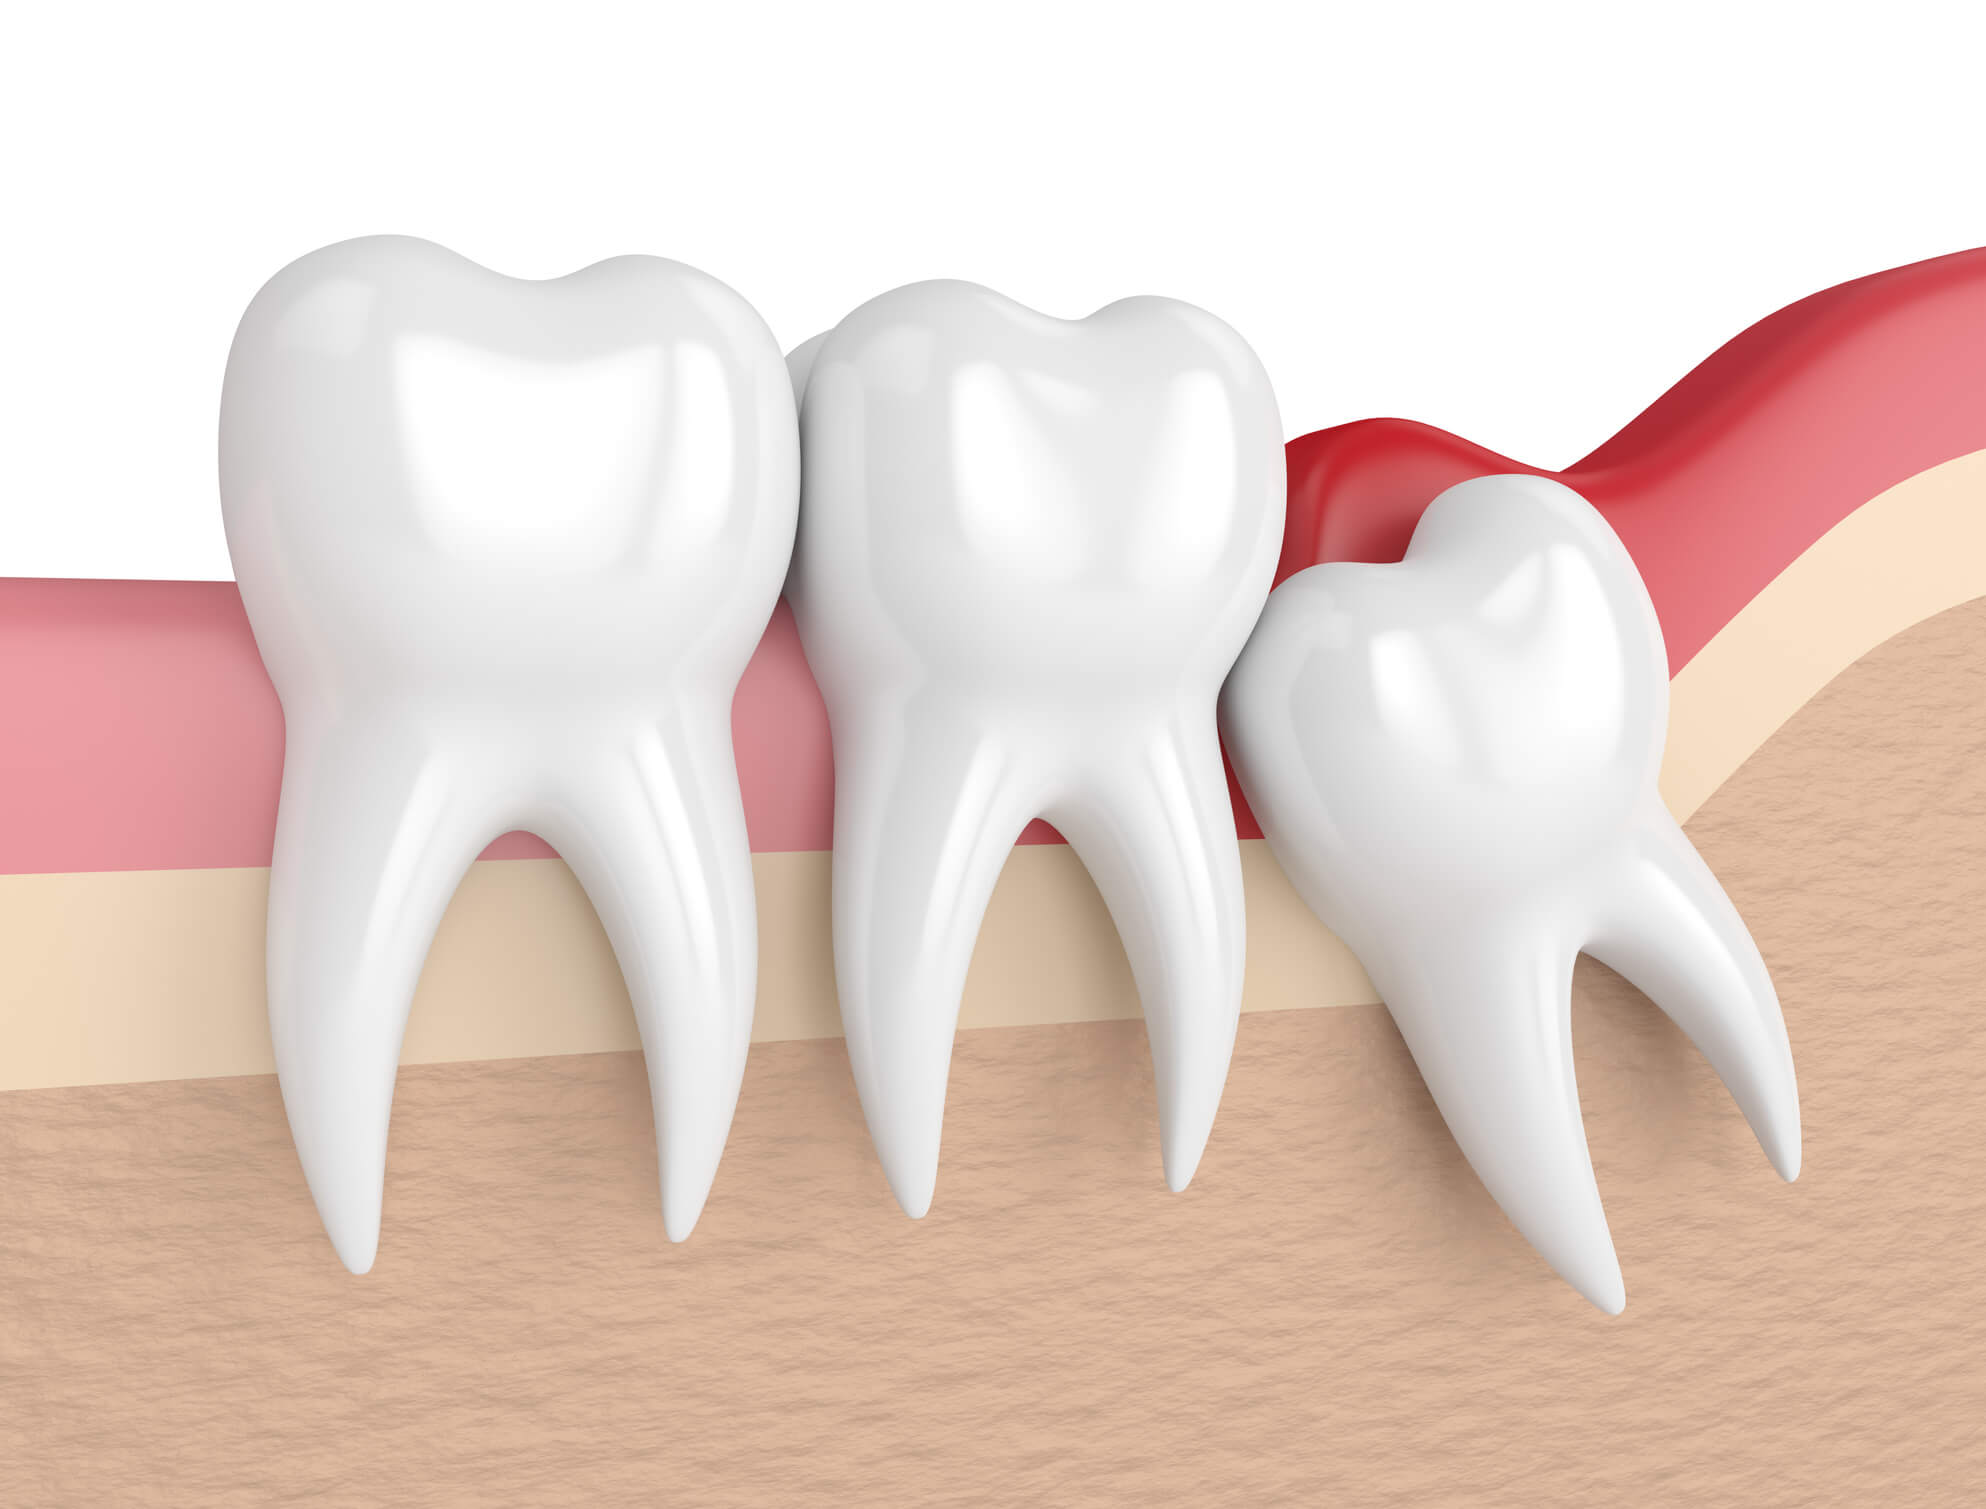 O dente do siso pode simplesmente não se encaixar juntos aos outros molares